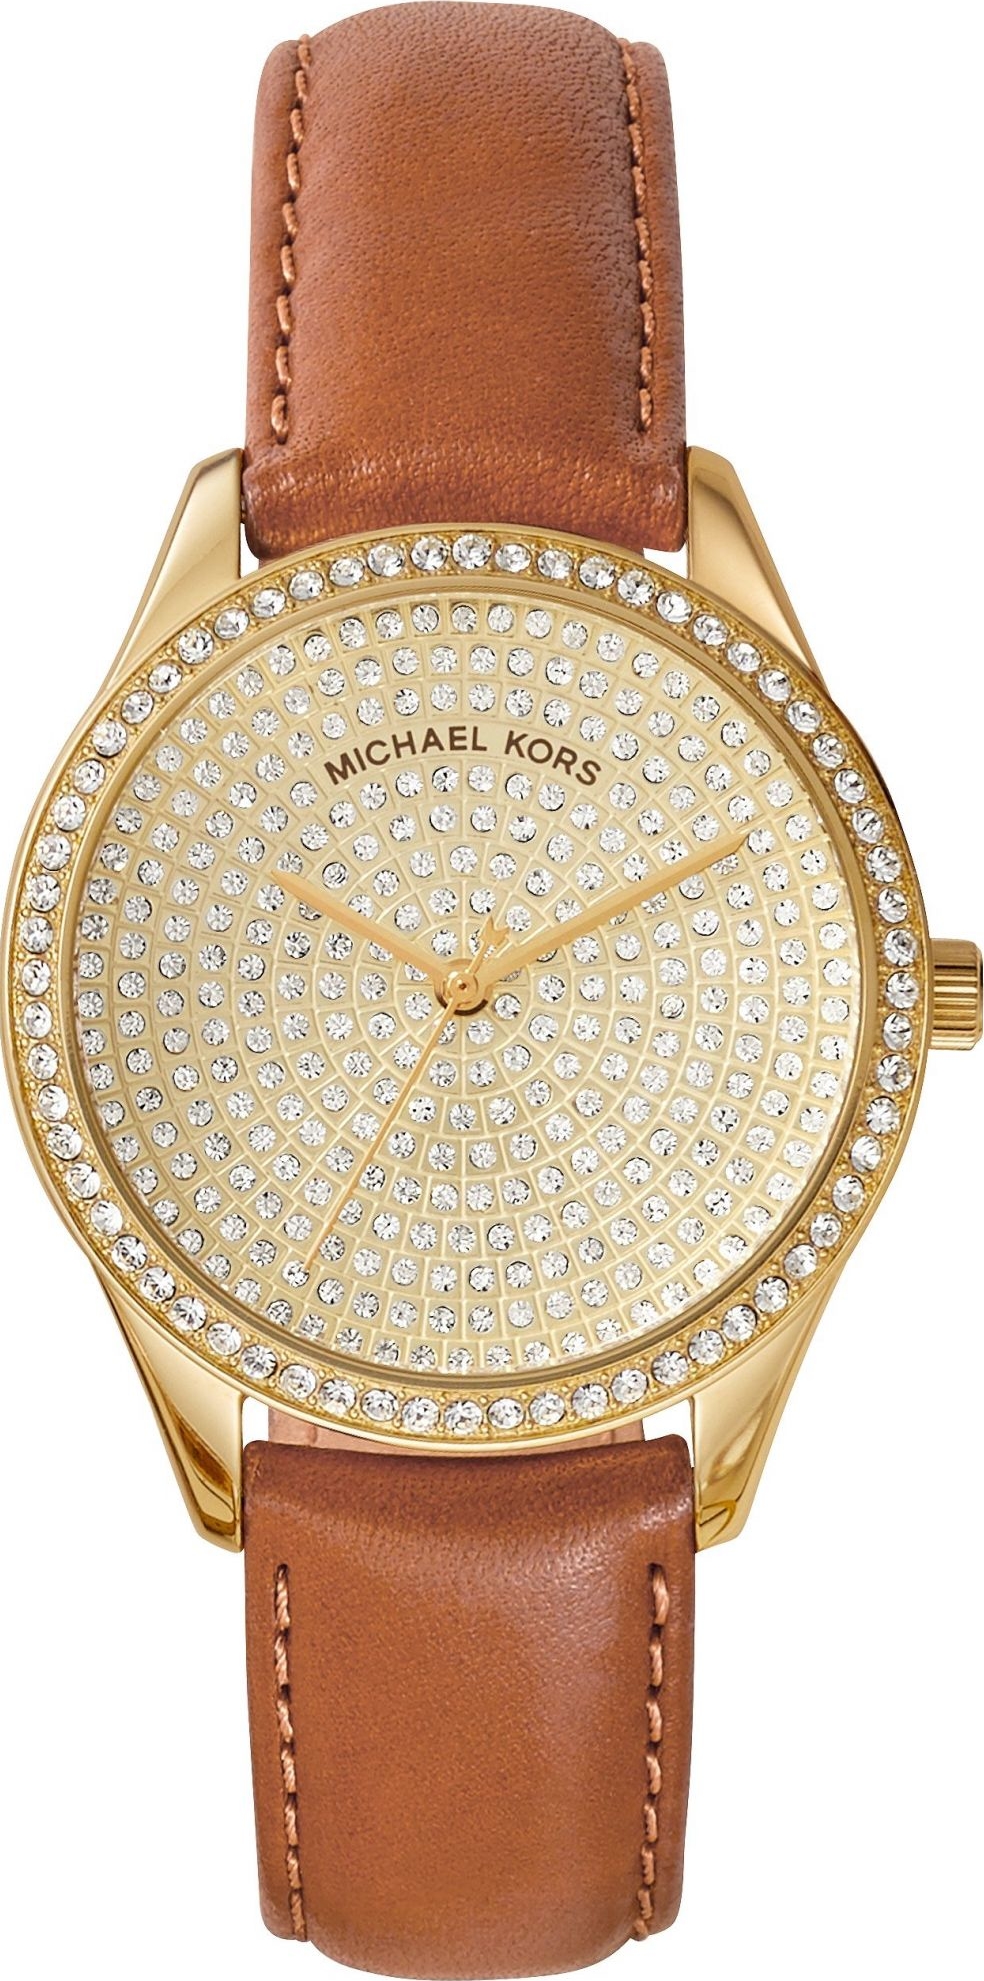 Michael Kors Gareth Chronograph Brown Leather Mens Watch MK8470 xách tay  chính hãng giá rẻ bảo hành dài  Đồng hồ nam  Senmix